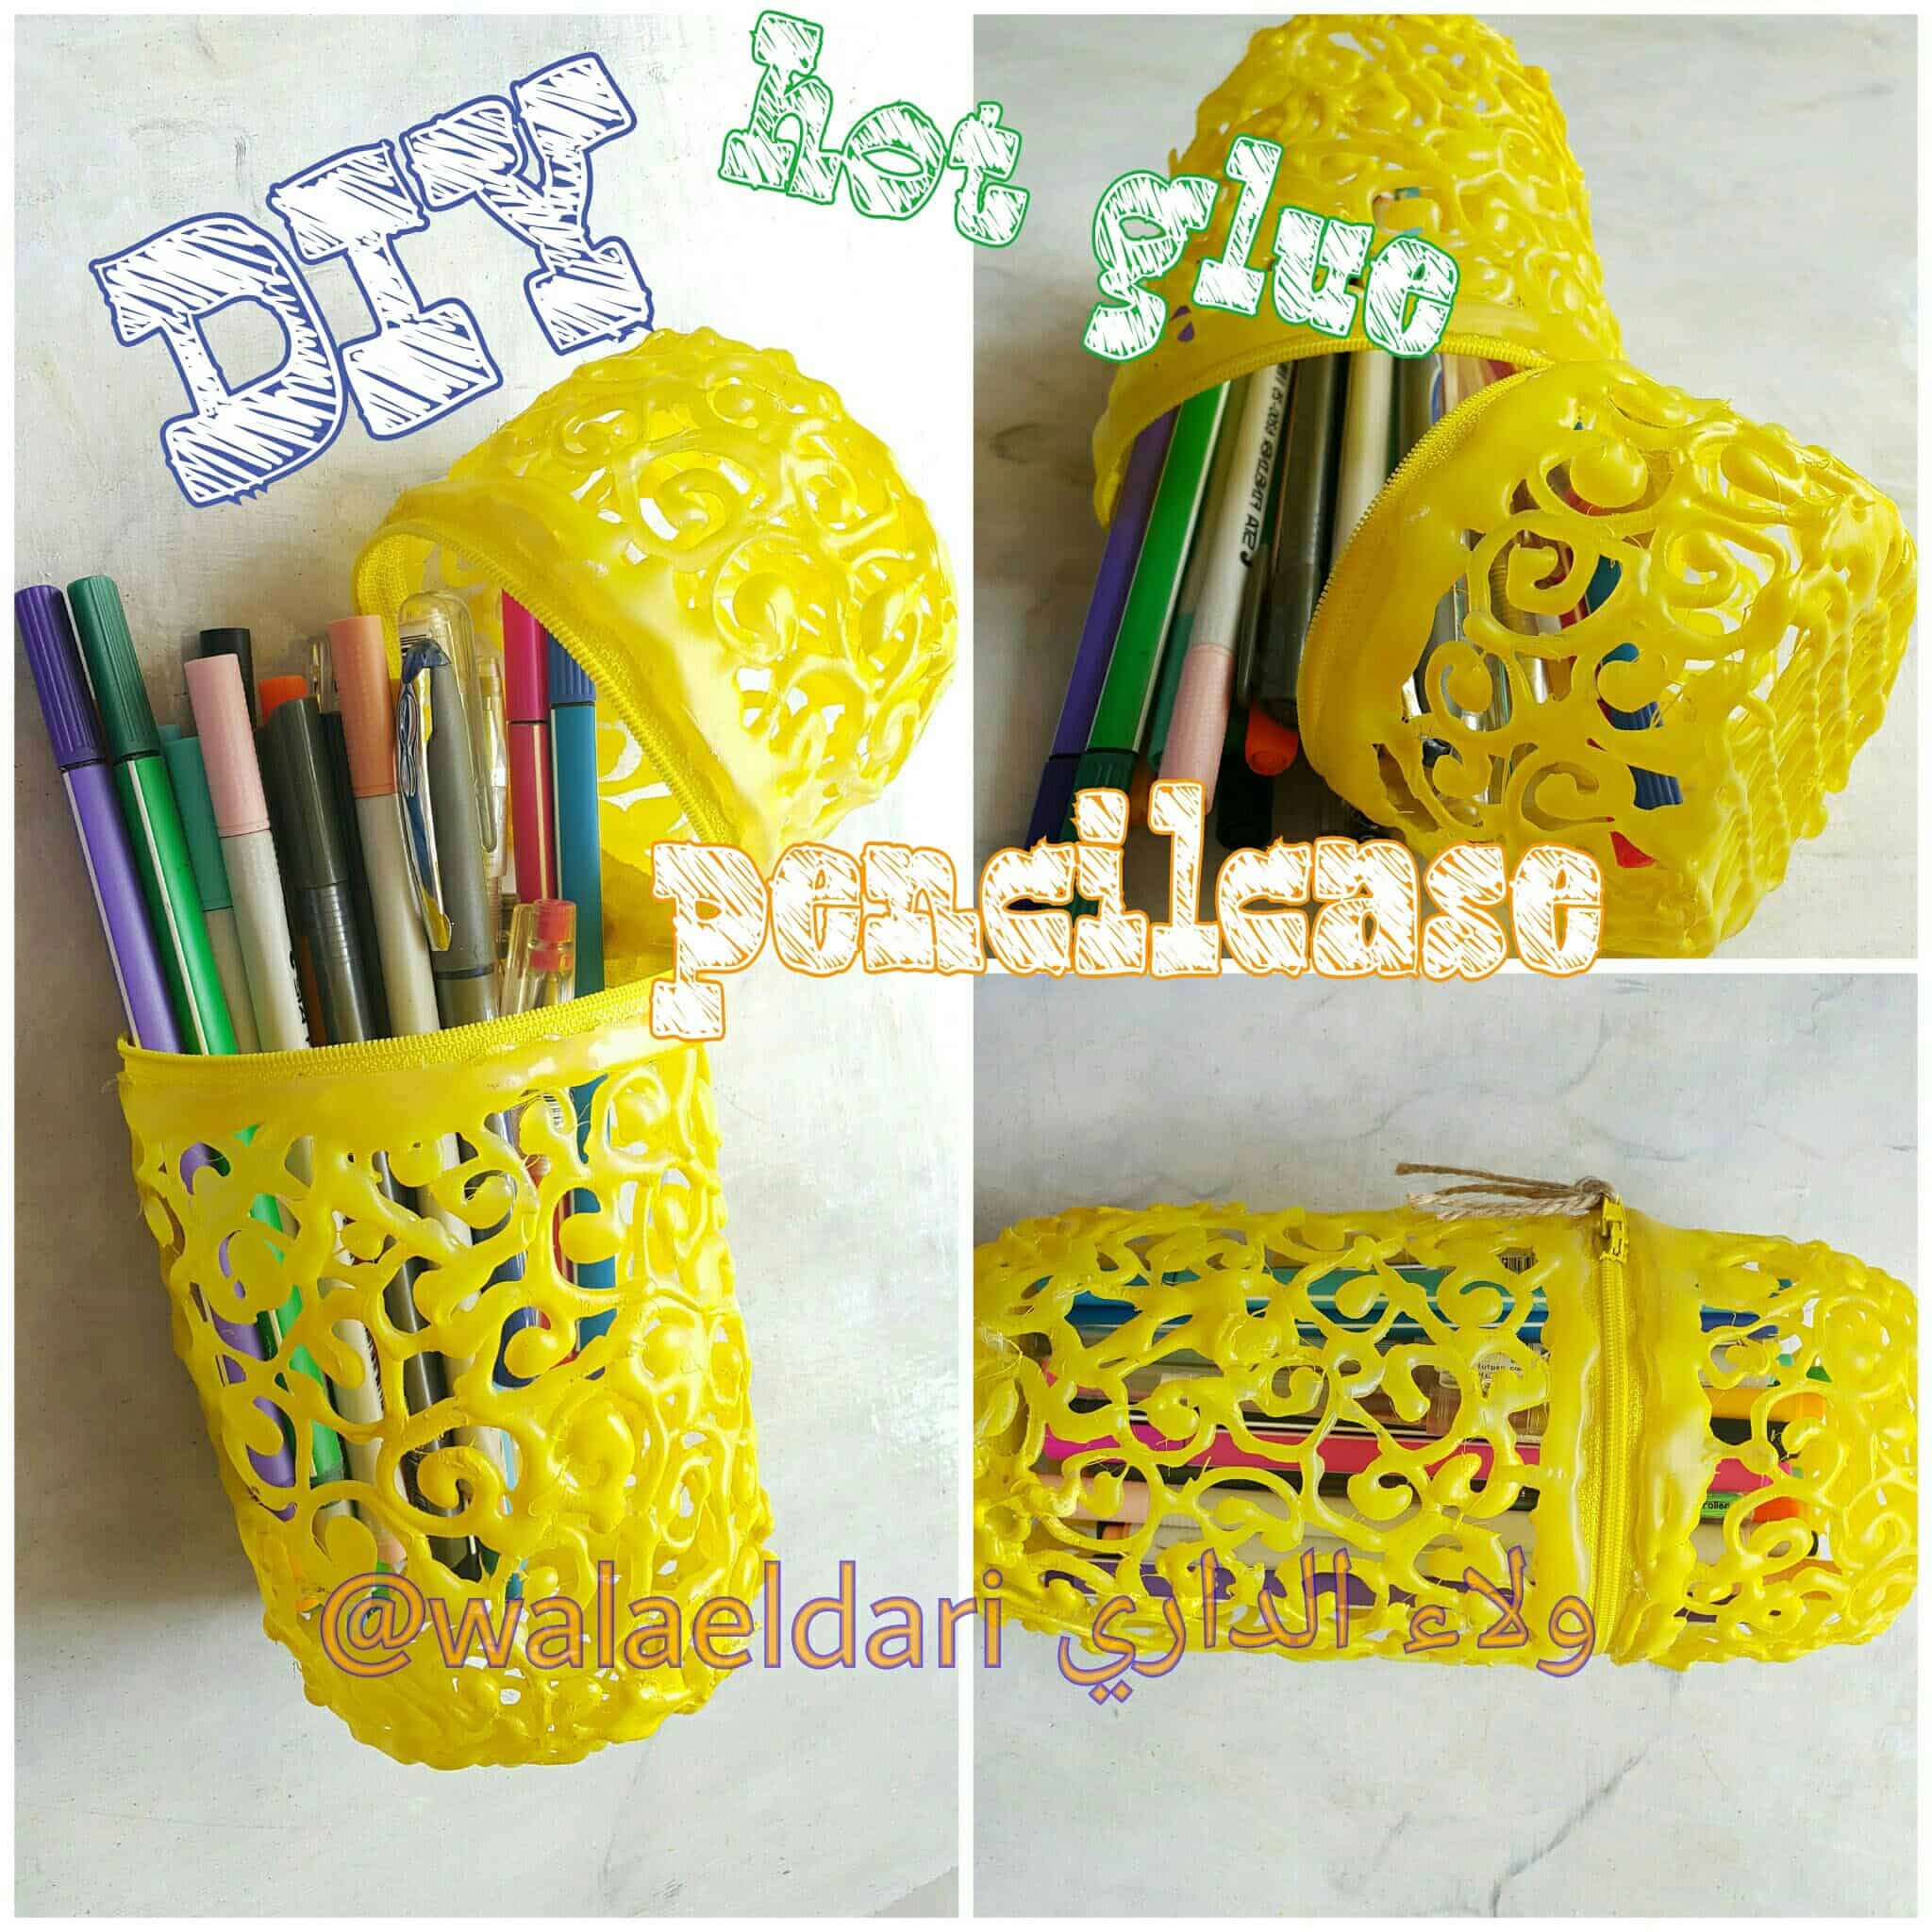 Hot glue pencil case